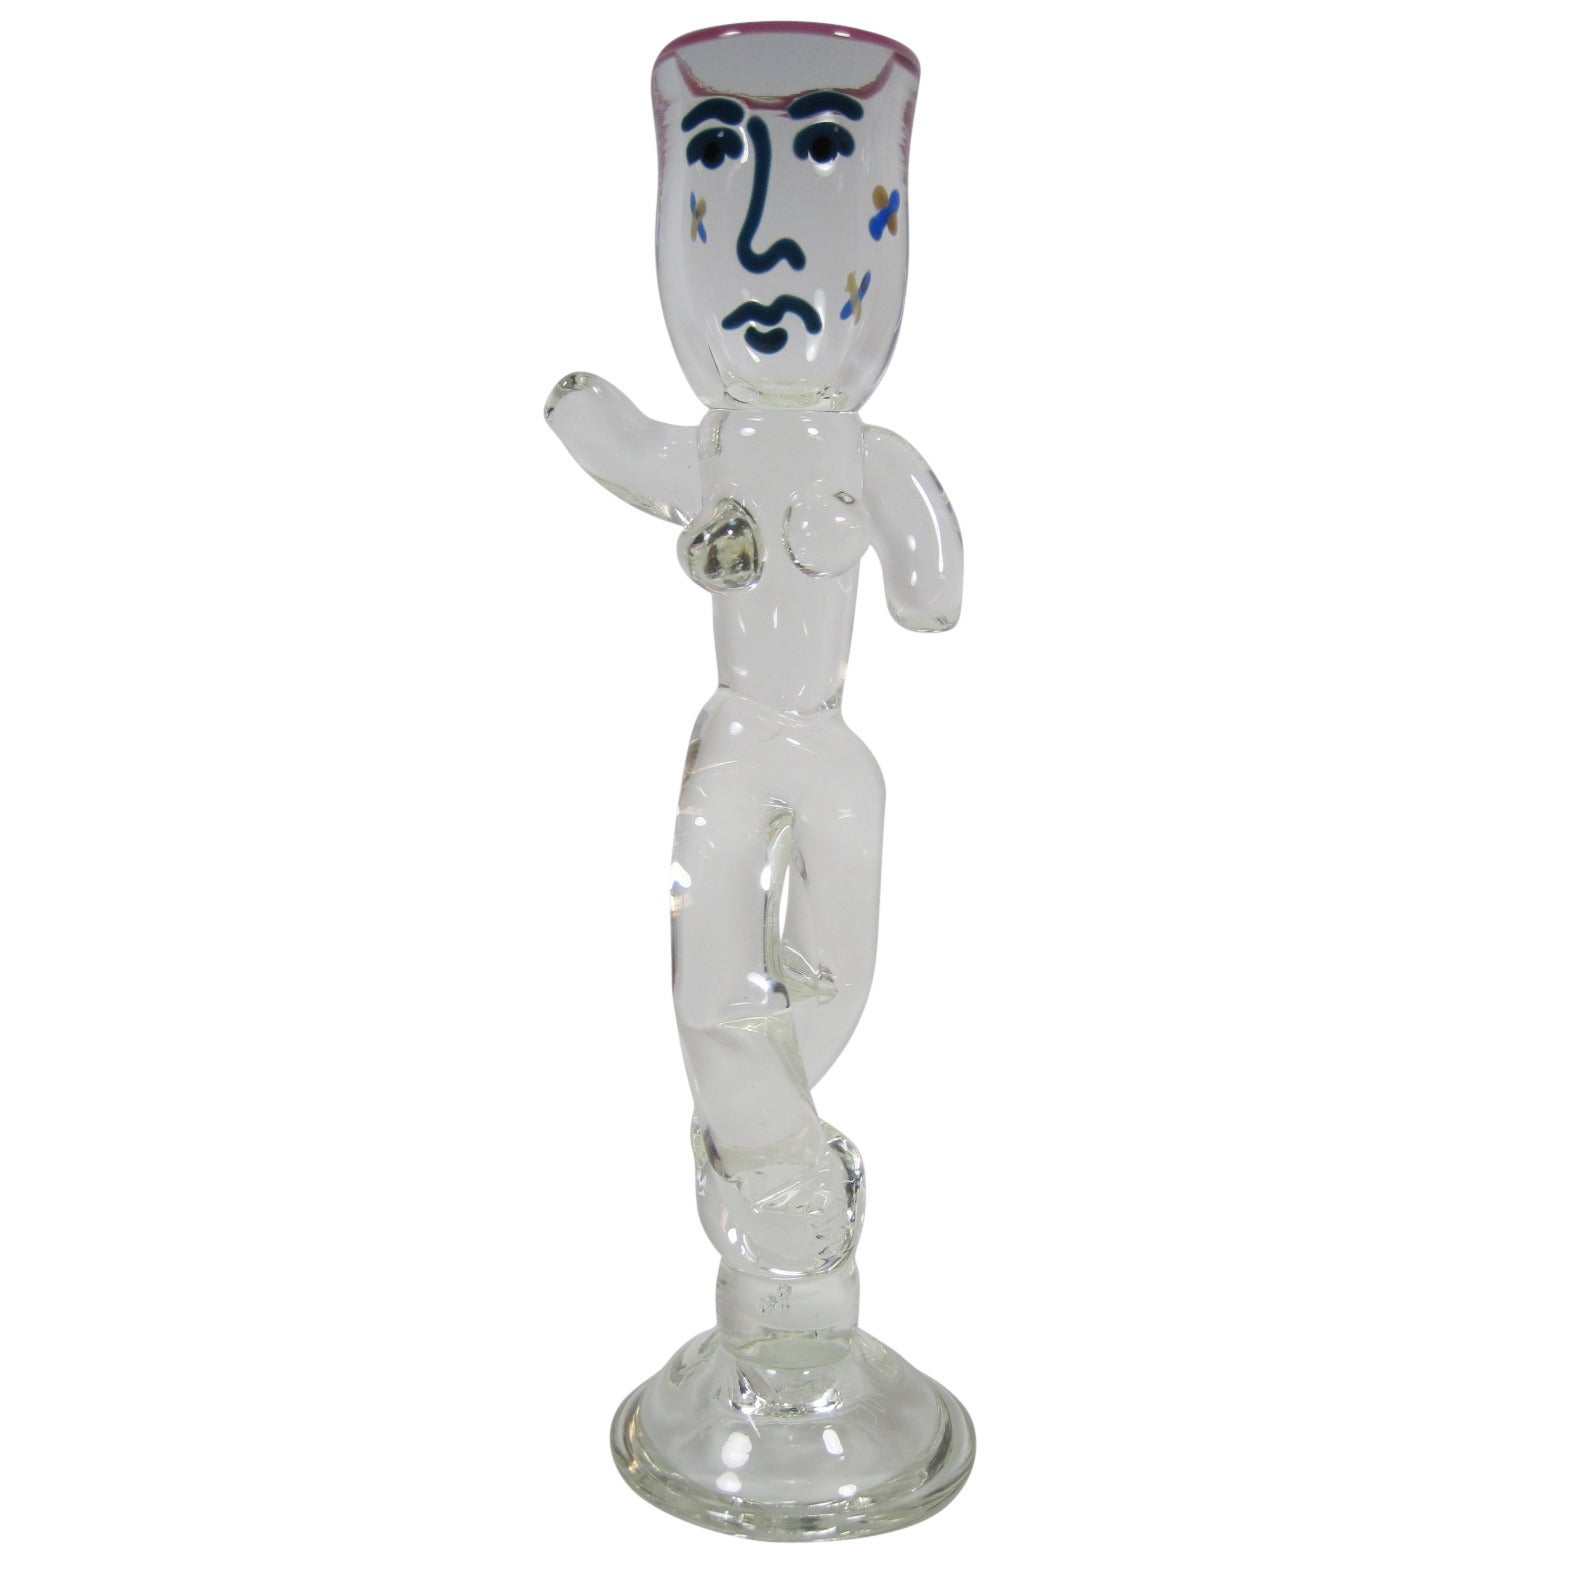 William Bernstein Art Glass Figural Lady Sculpture